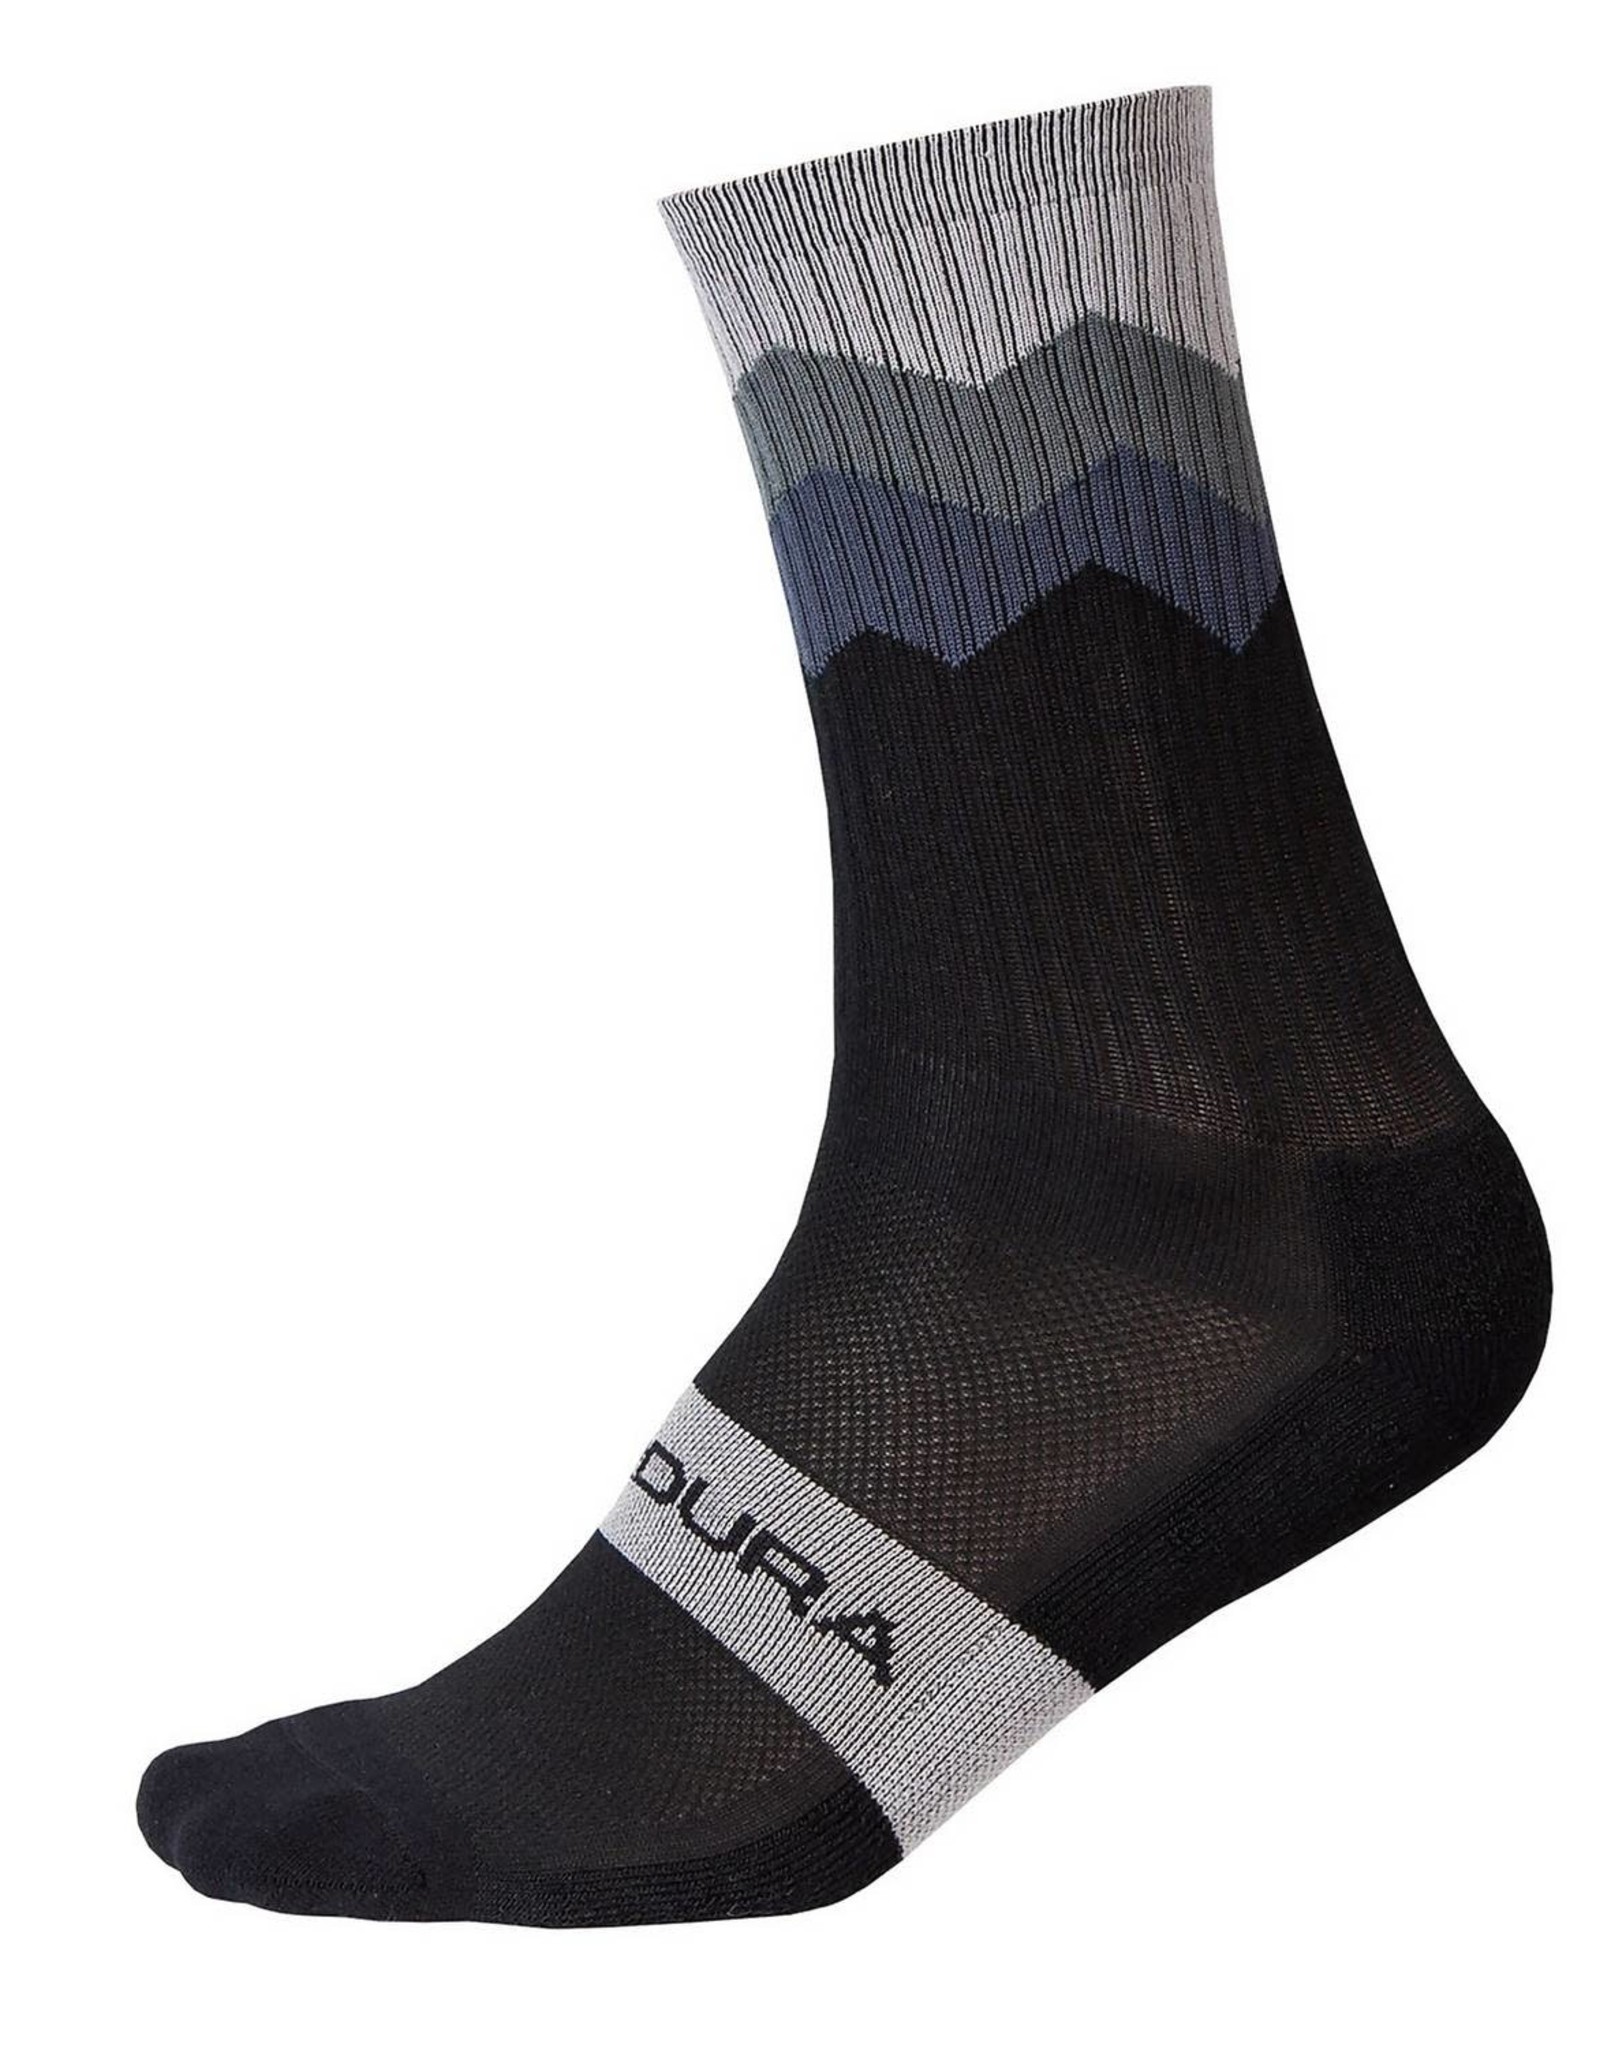 Endura Jagged Sock, BK: L-XL